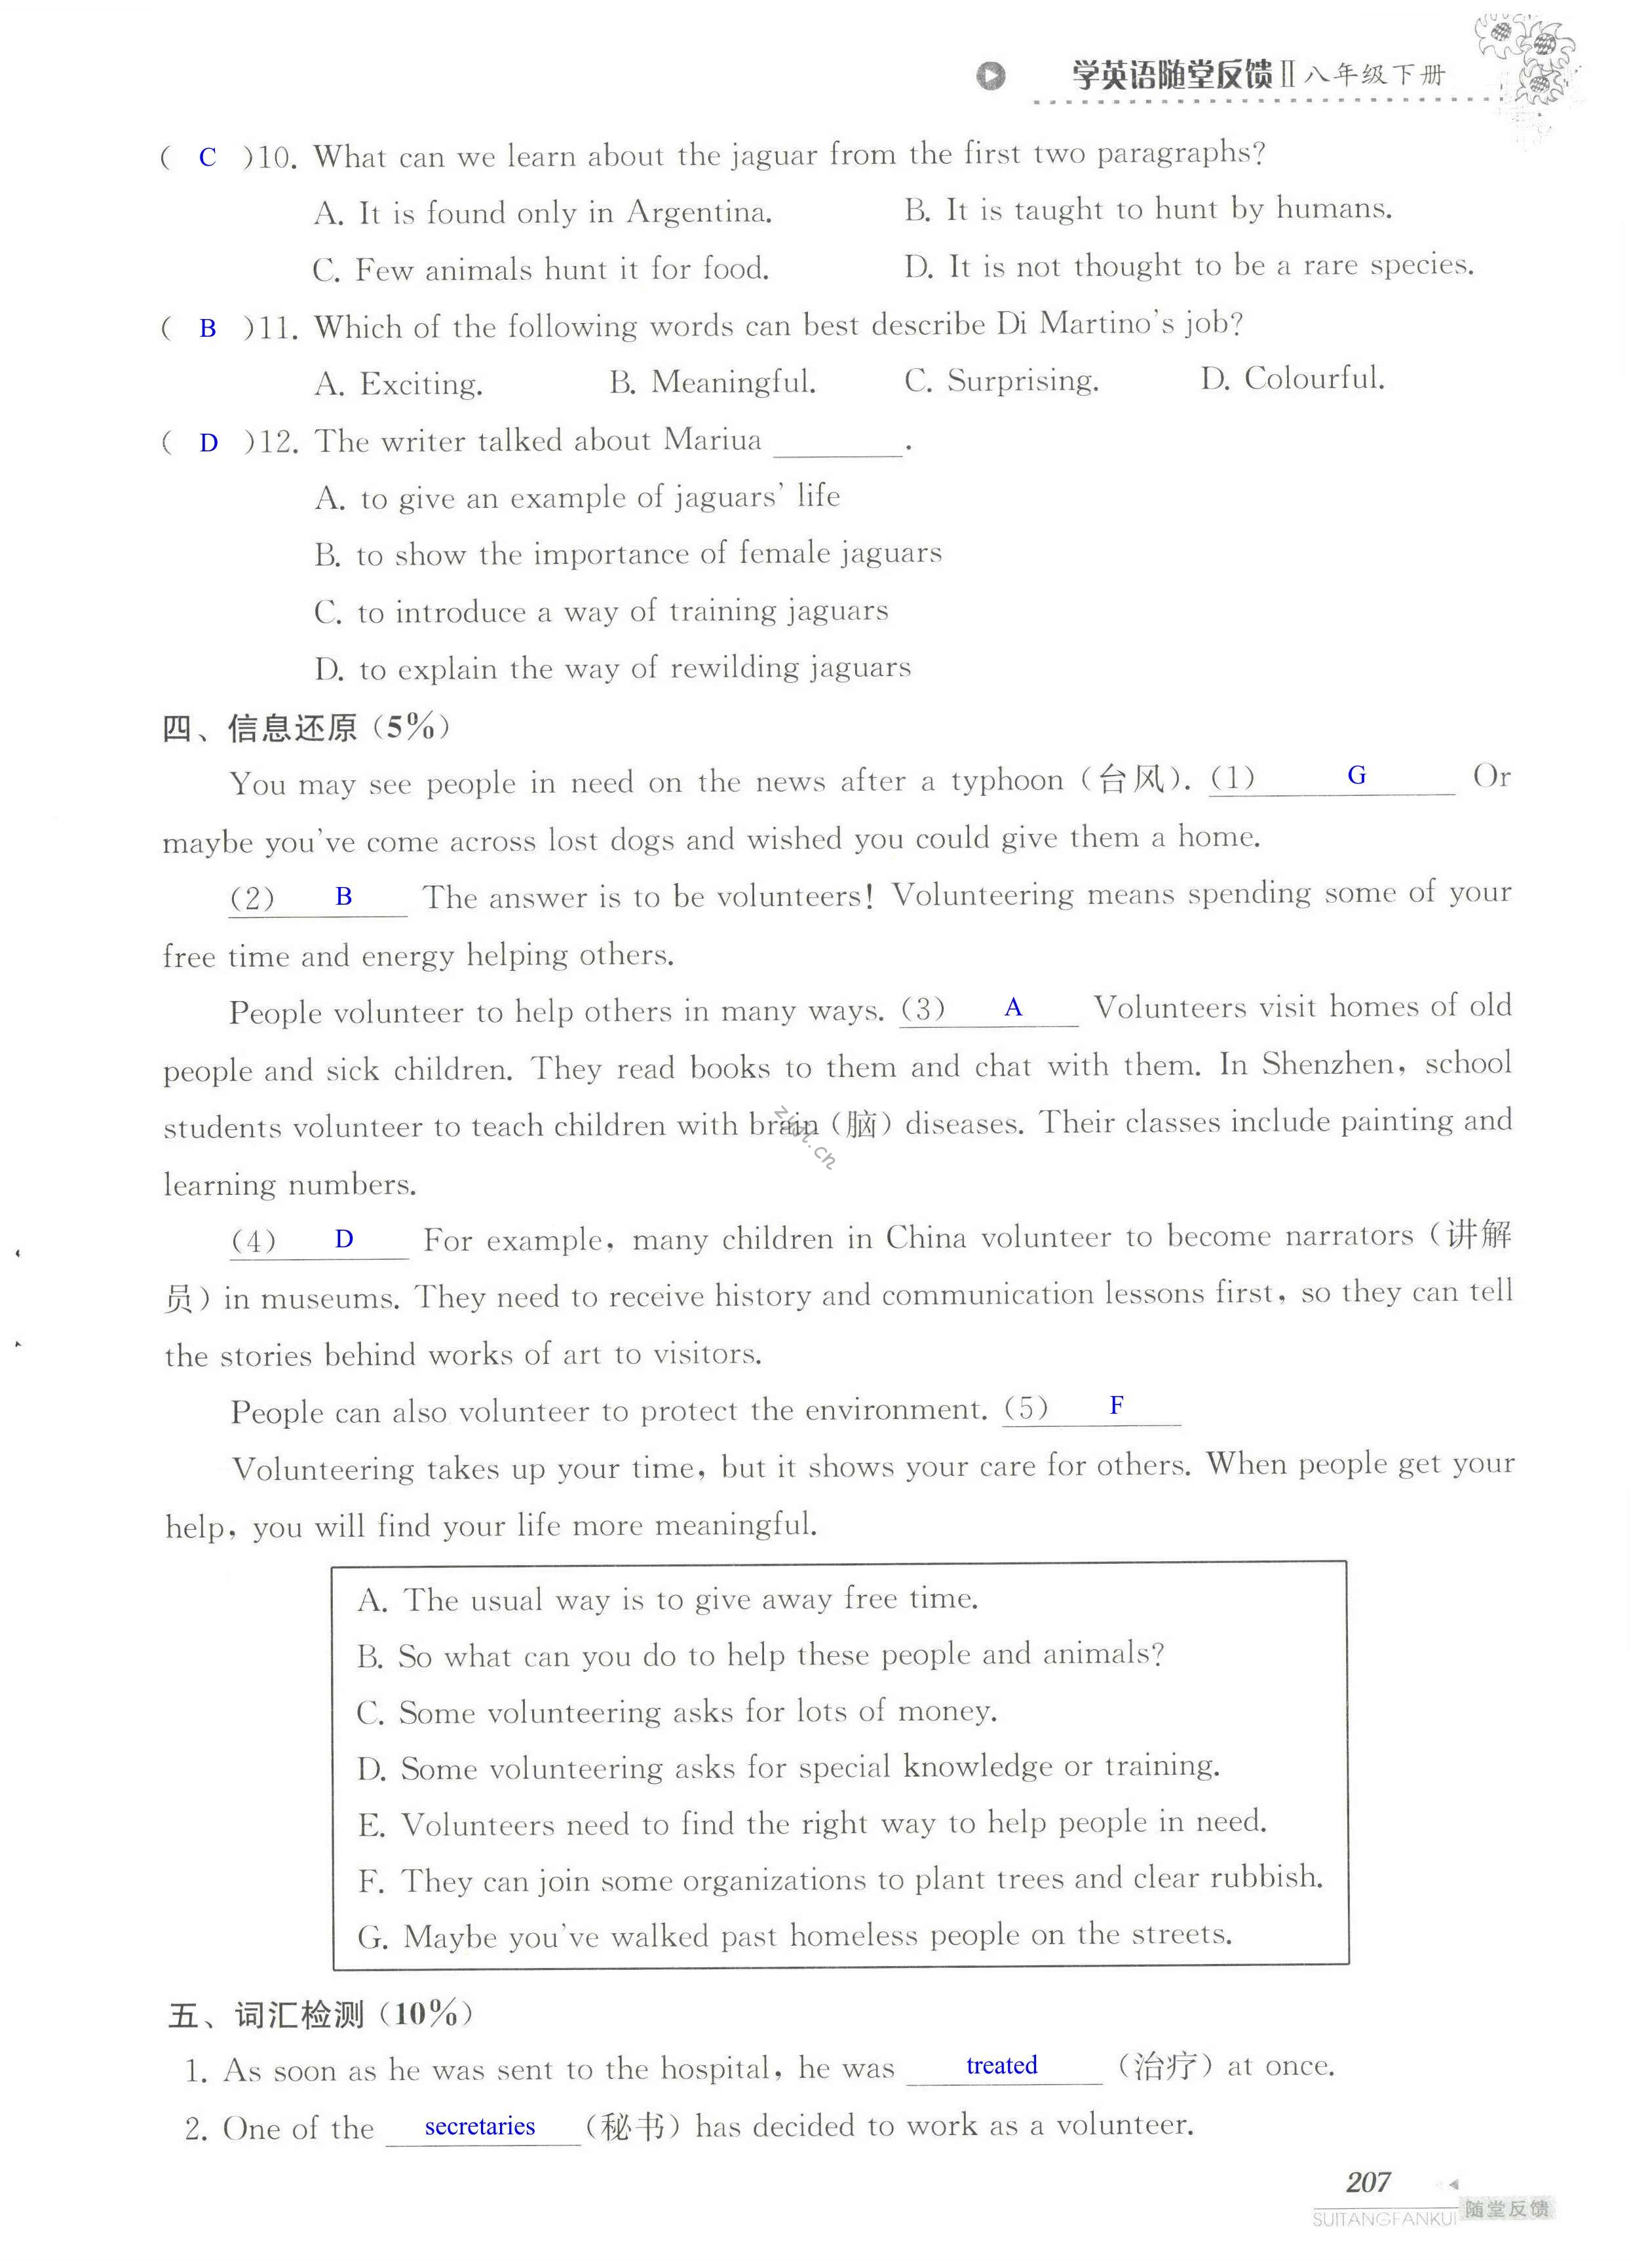 单元综合测试卷 Test for Unit 7 of 8B - 第207页